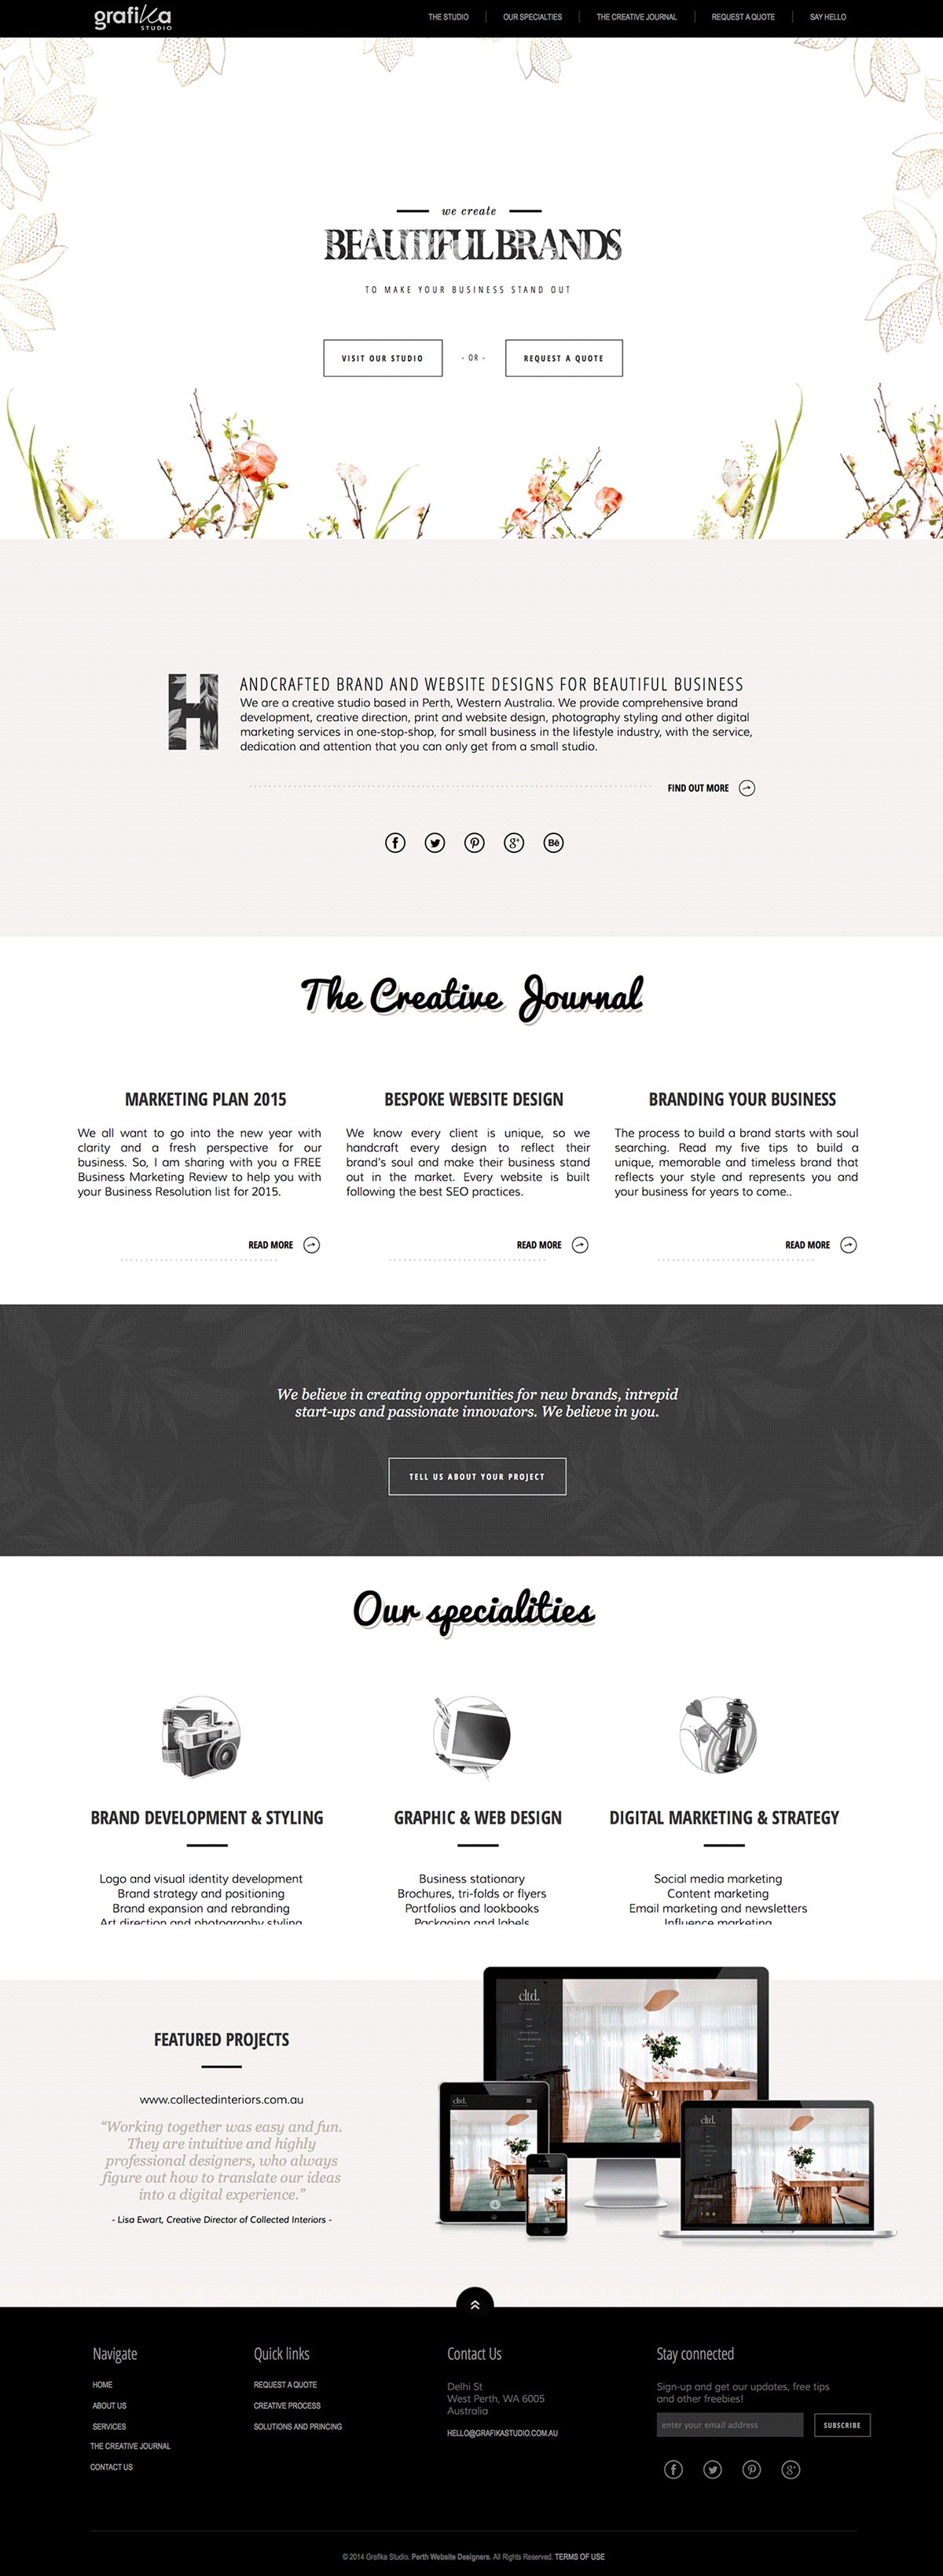 Website Design responsive website